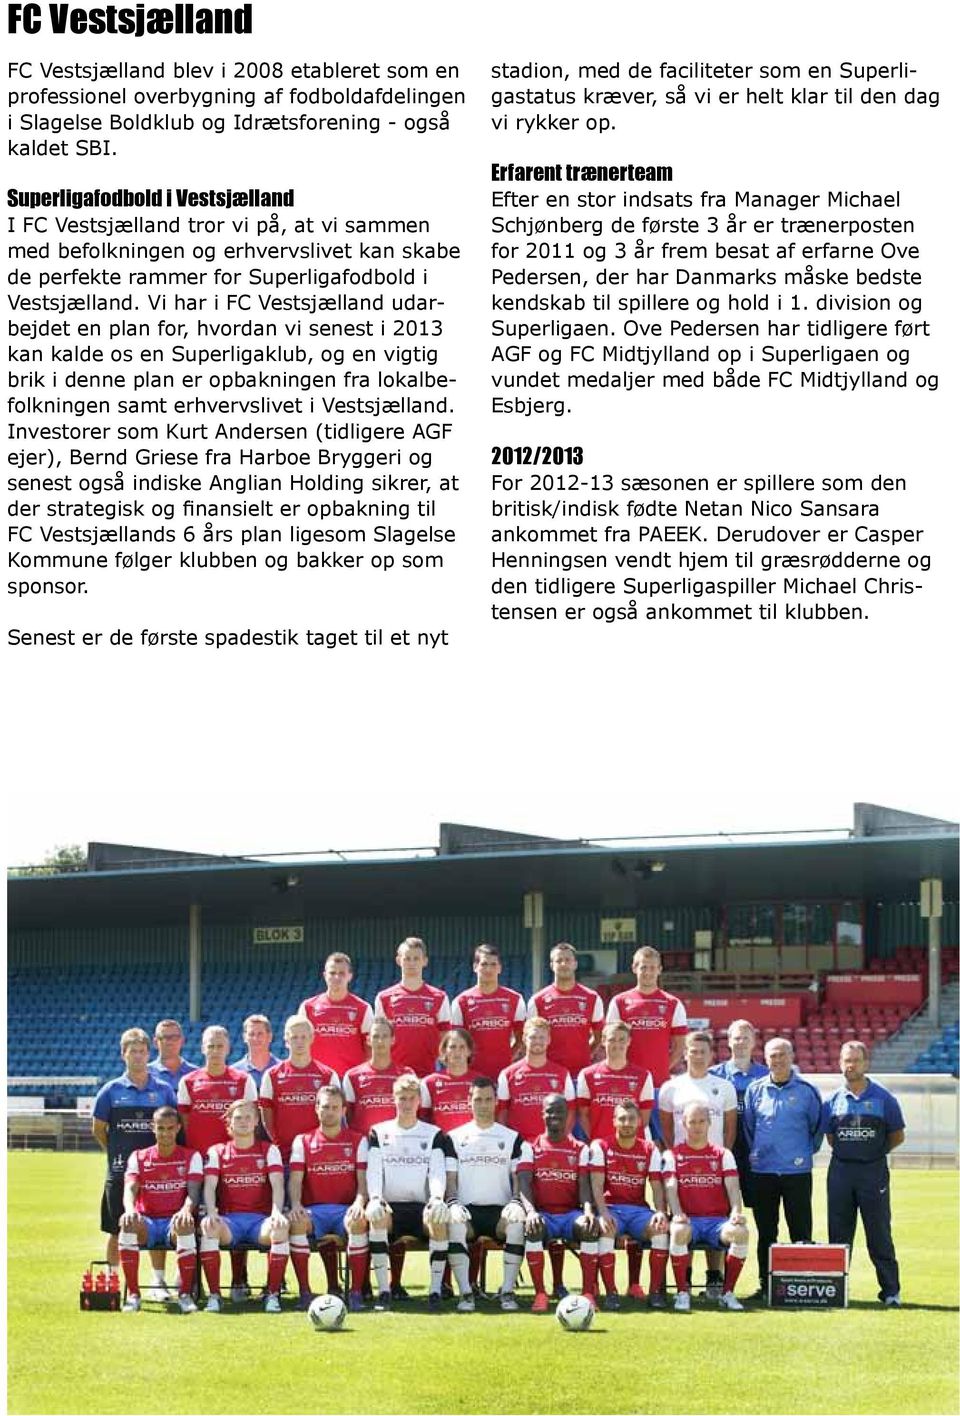 Vi har i FC Vestsjælland udarbejdet en plan for, hvordan vi senest i 2013 kan kalde os en Superligaklub, og en vigtig brik i denne plan er opbakningen fra lokalbefolkningen samt erhvervslivet i